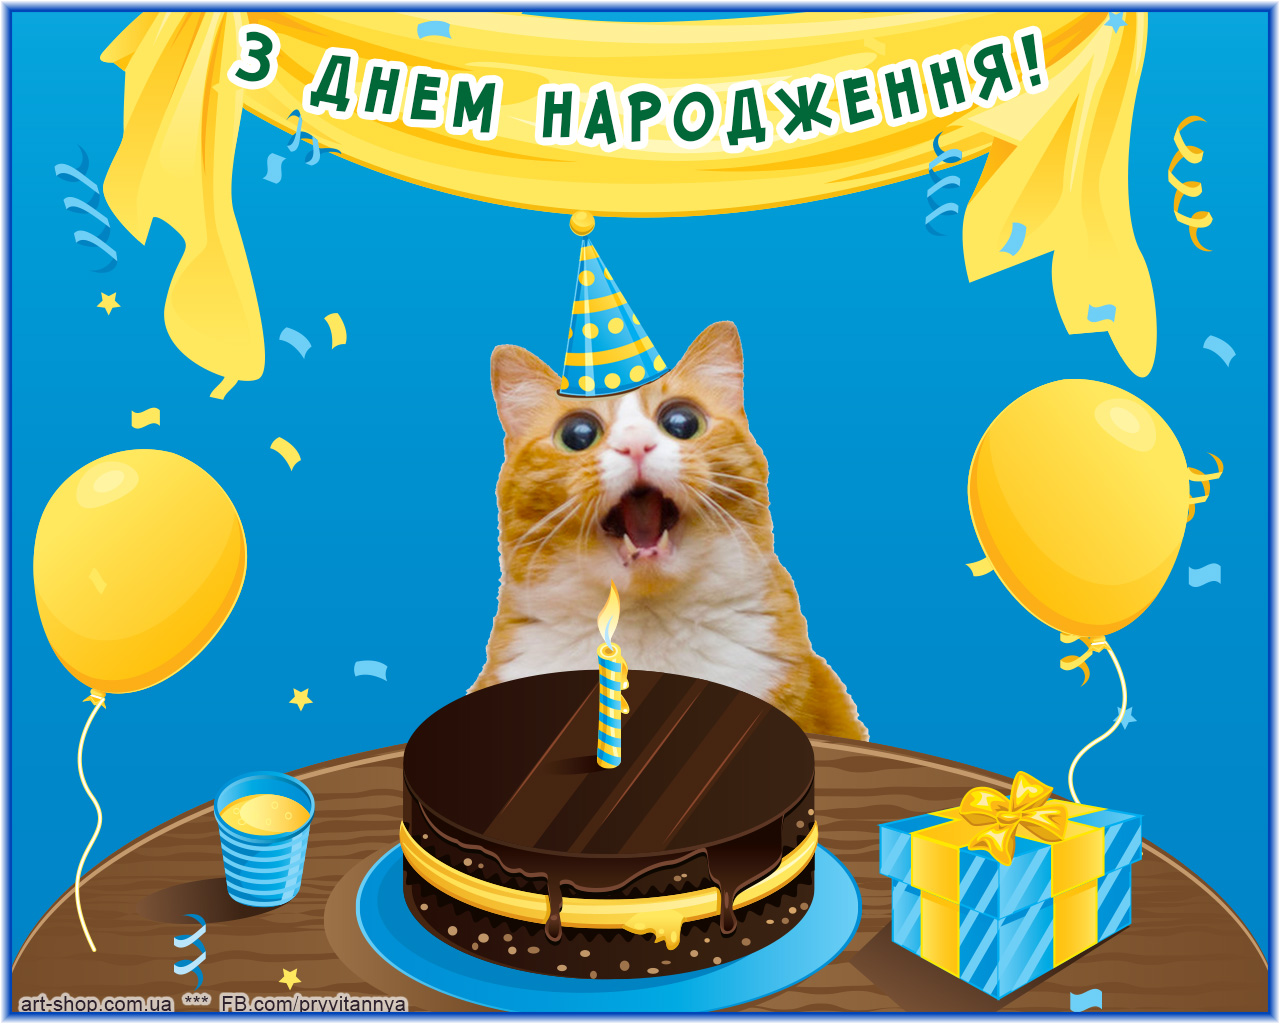 Поздравить с днем рождения на украинском. С днем народження. З днем народження картинки. С днем рождения на украинском. Поздравление с днем рождения на украинском.